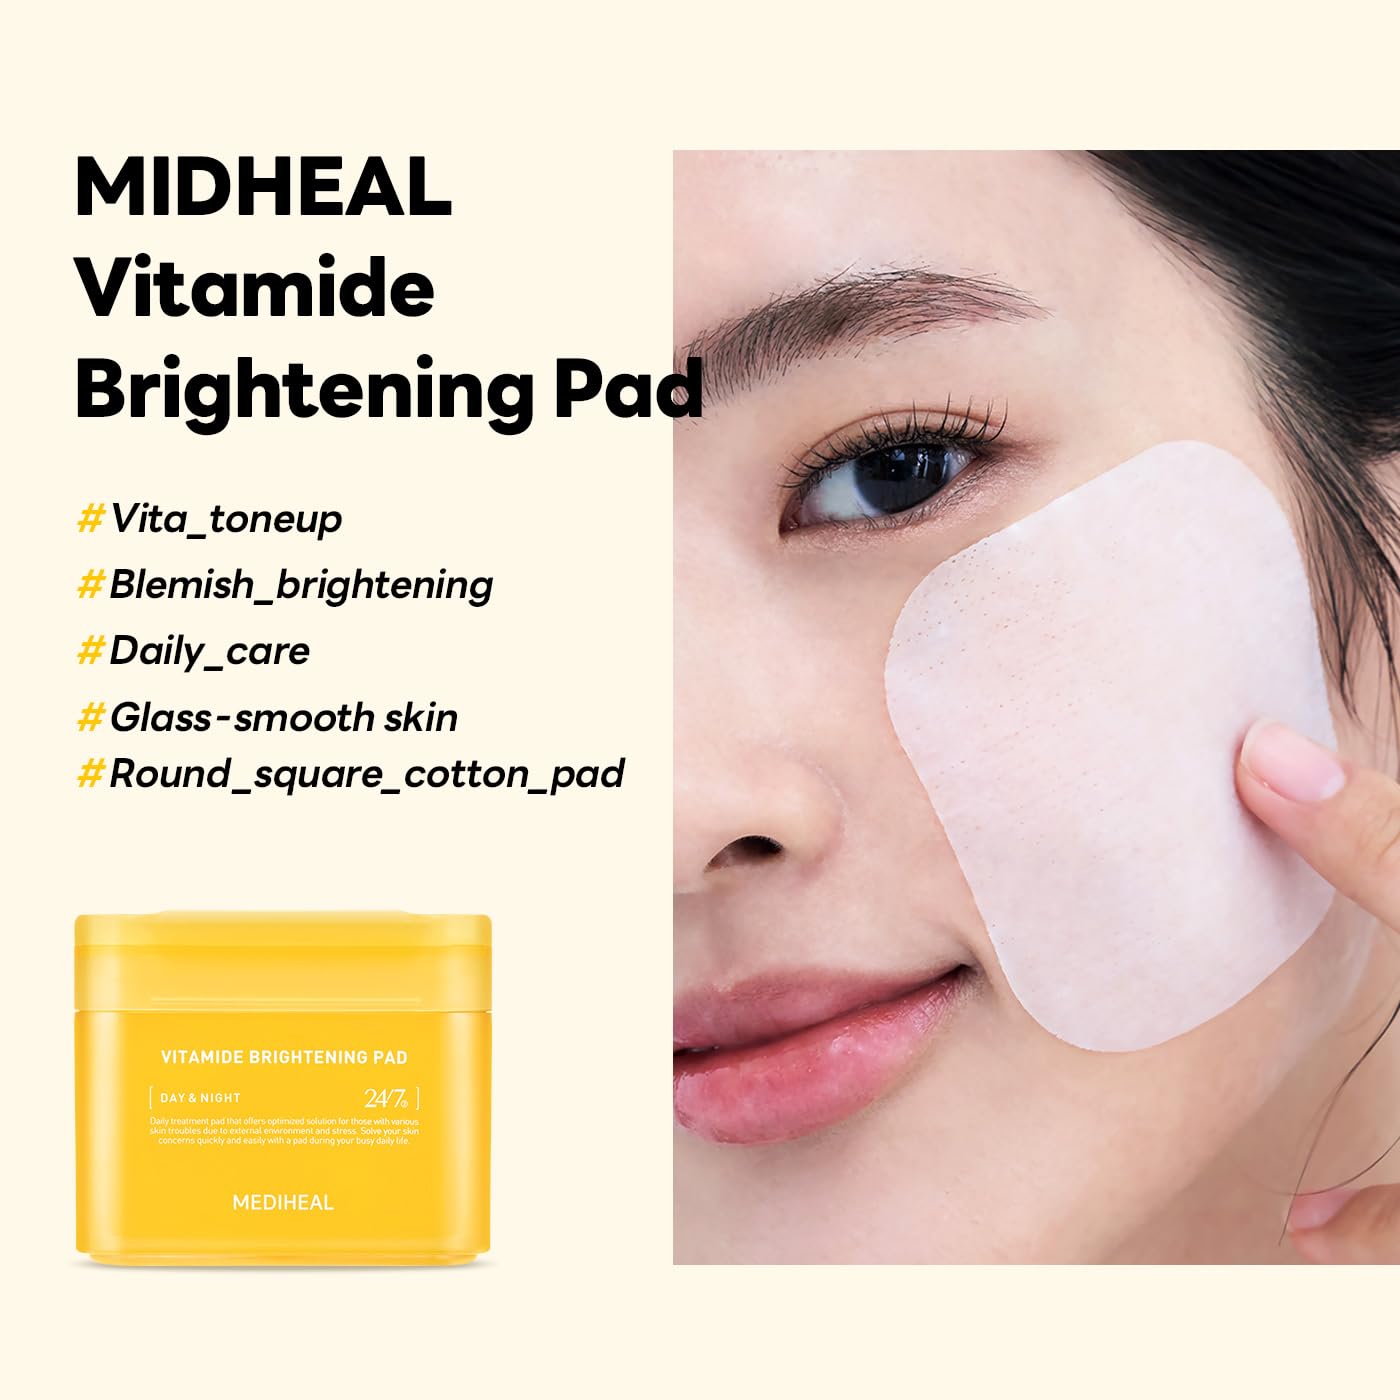 Vitamide Brightening Pad